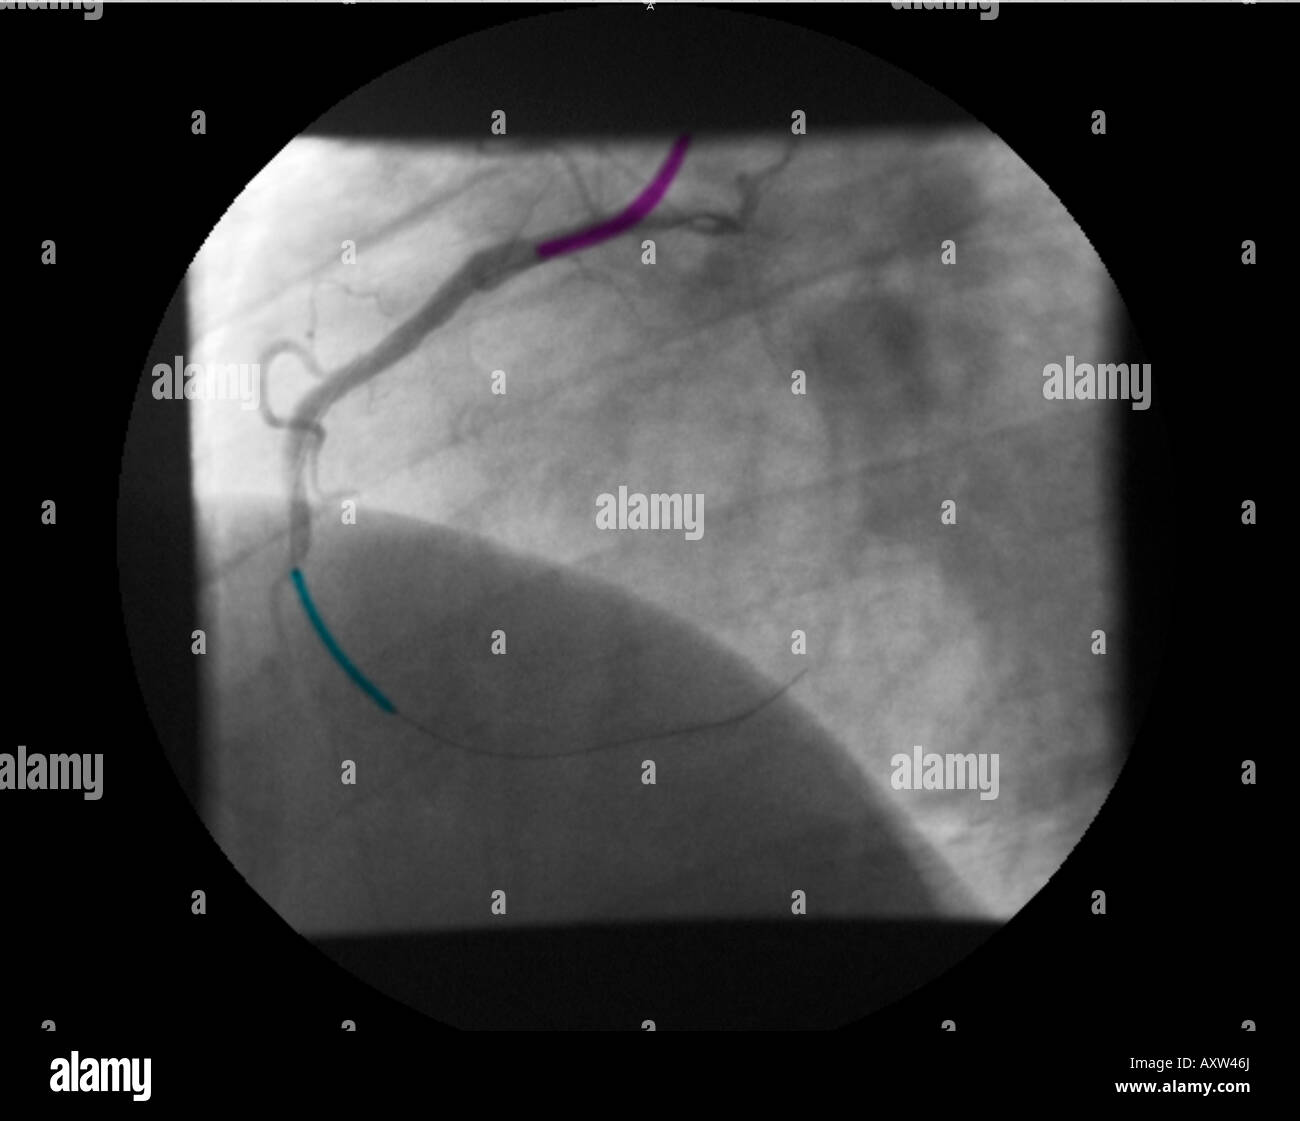 In modo digitale avanzata, colorizzato raggi x di un angiogramma coronarico che mostra uno stent di aprire la stenosi dell'arteria coronaria destra Foto Stock